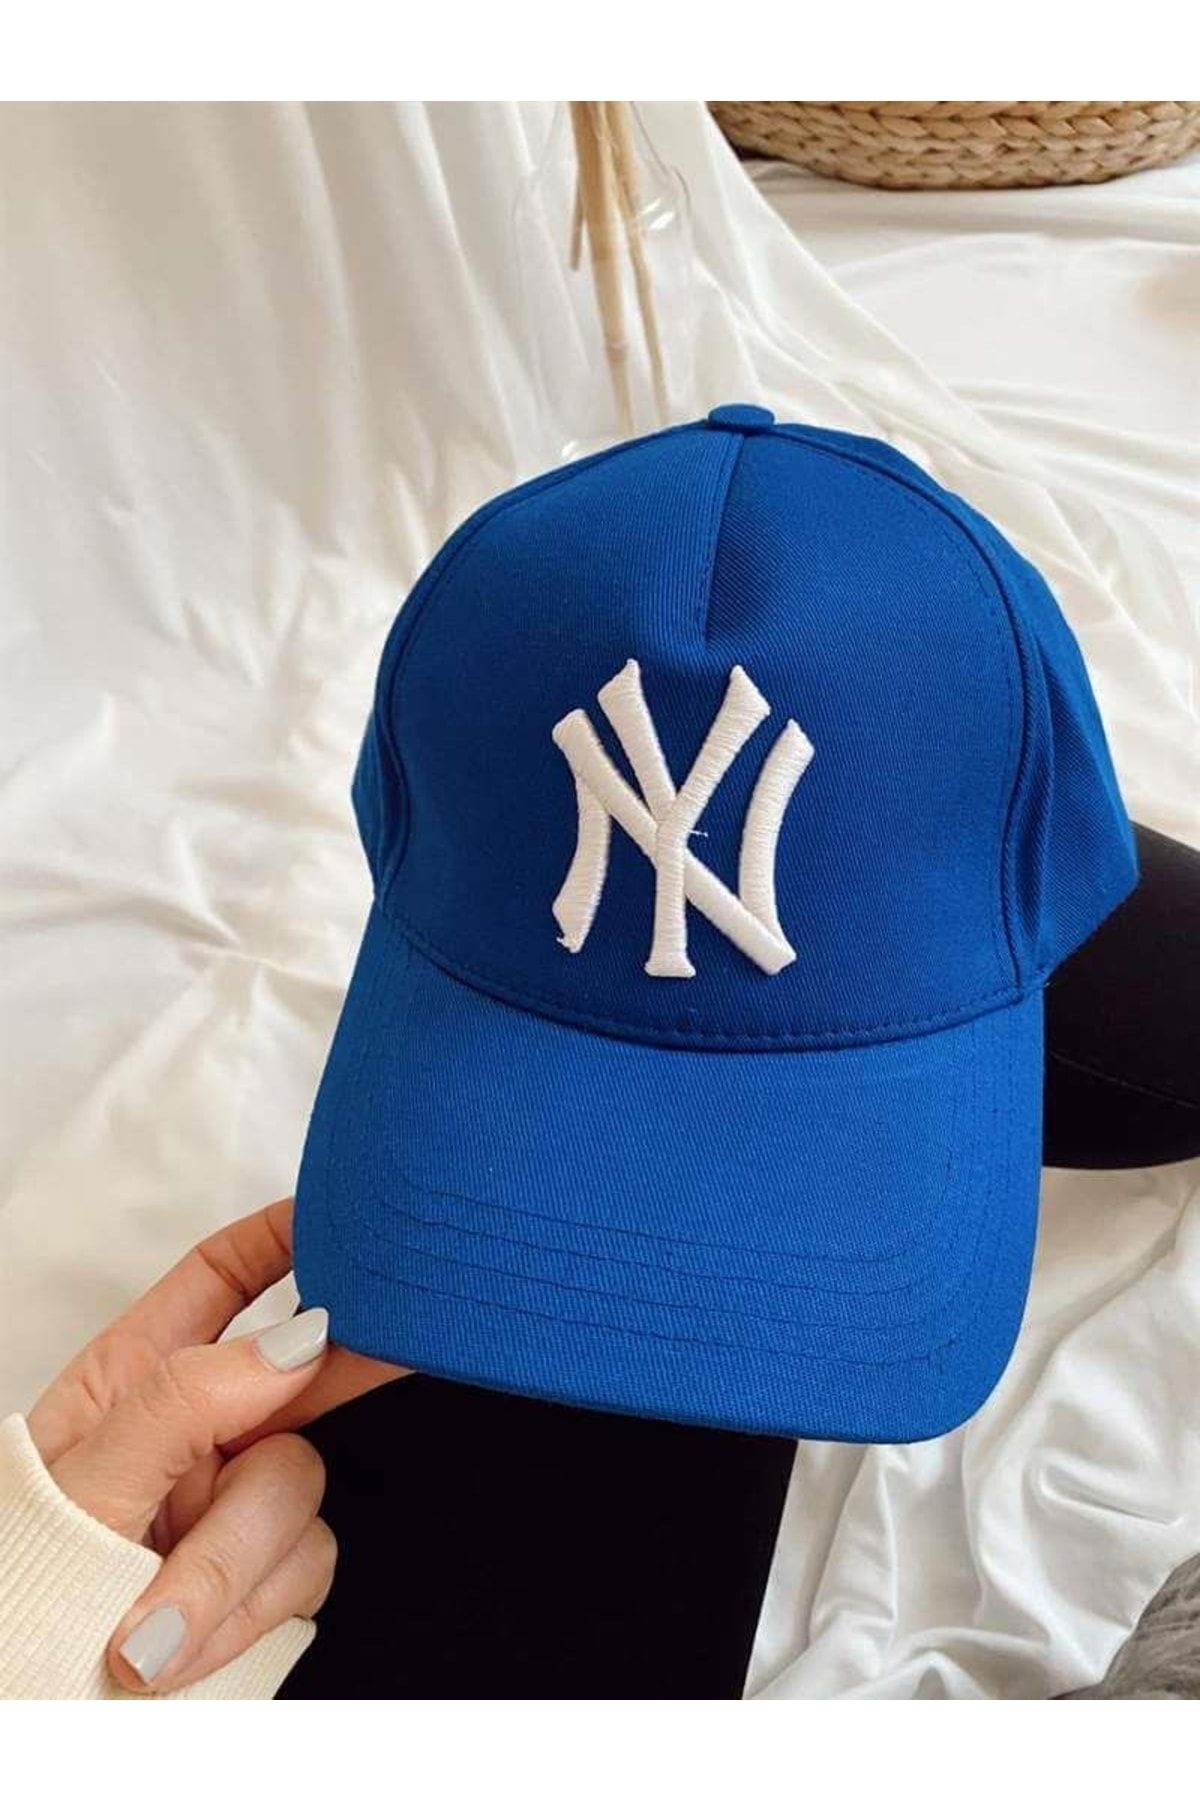 Takı Dükkanı Mavi Ny Cap Beyaz Nakışlı Unisex Şapka Cp220